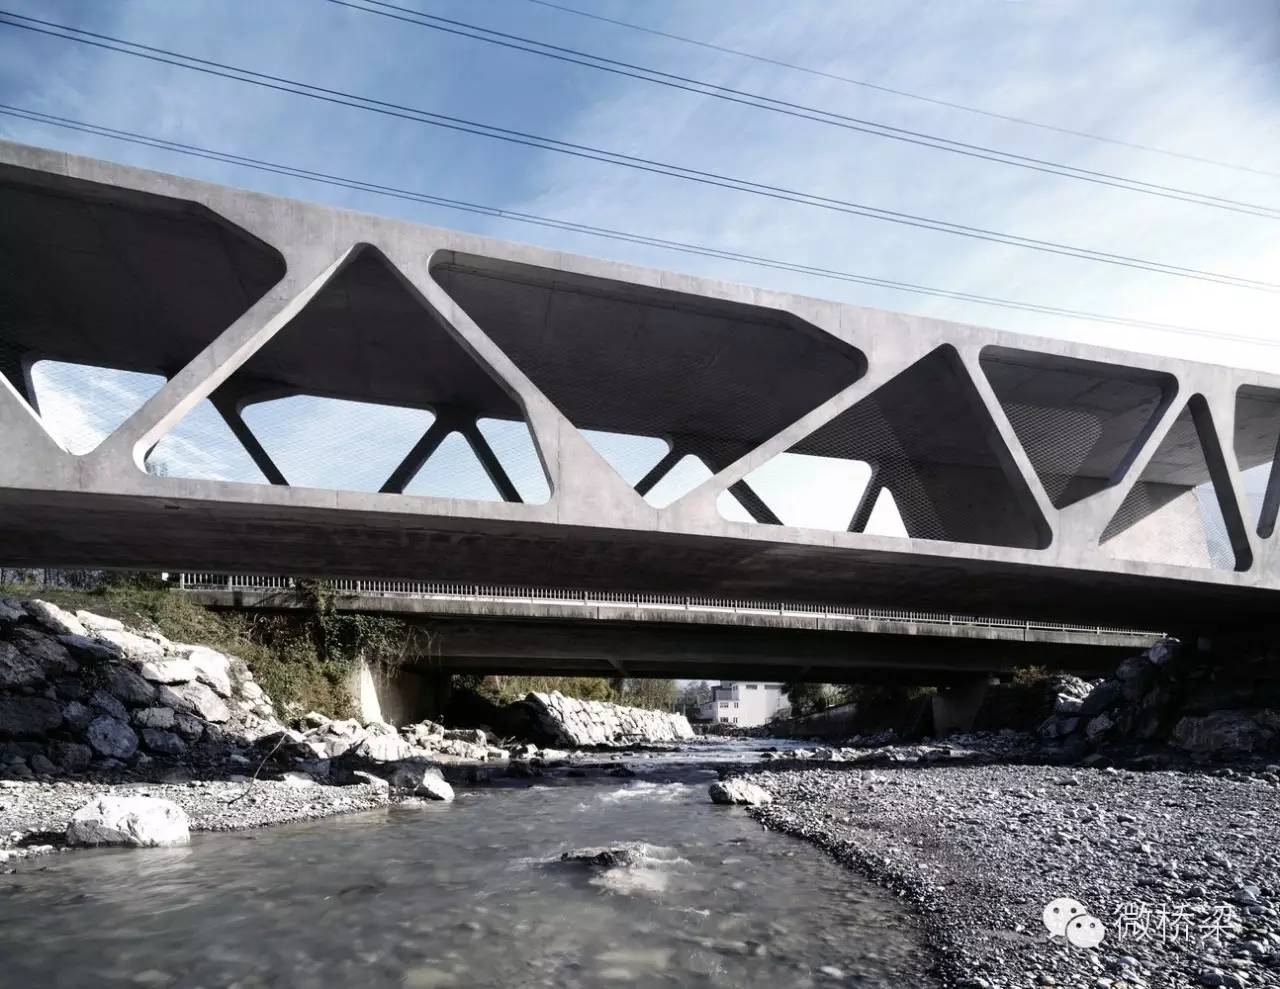 266 下承式混凝土桁架桥 alfenz 大桥